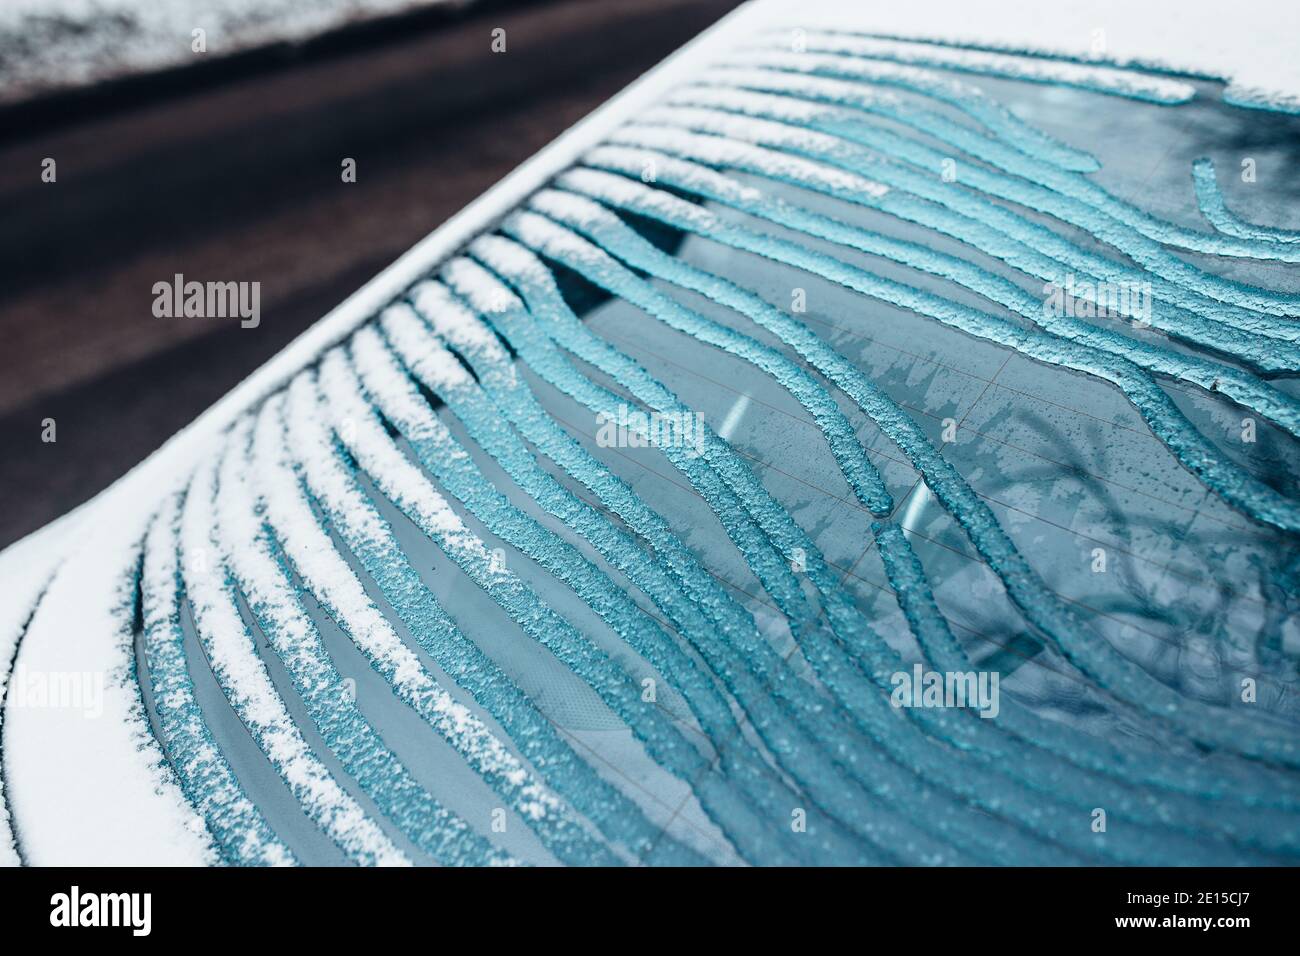 Eis schmilzt auf der Heckscheibe des Fahrzeugs - Elektrische Fensterheizung  mit Kontaktstreifen Stockfotografie - Alamy